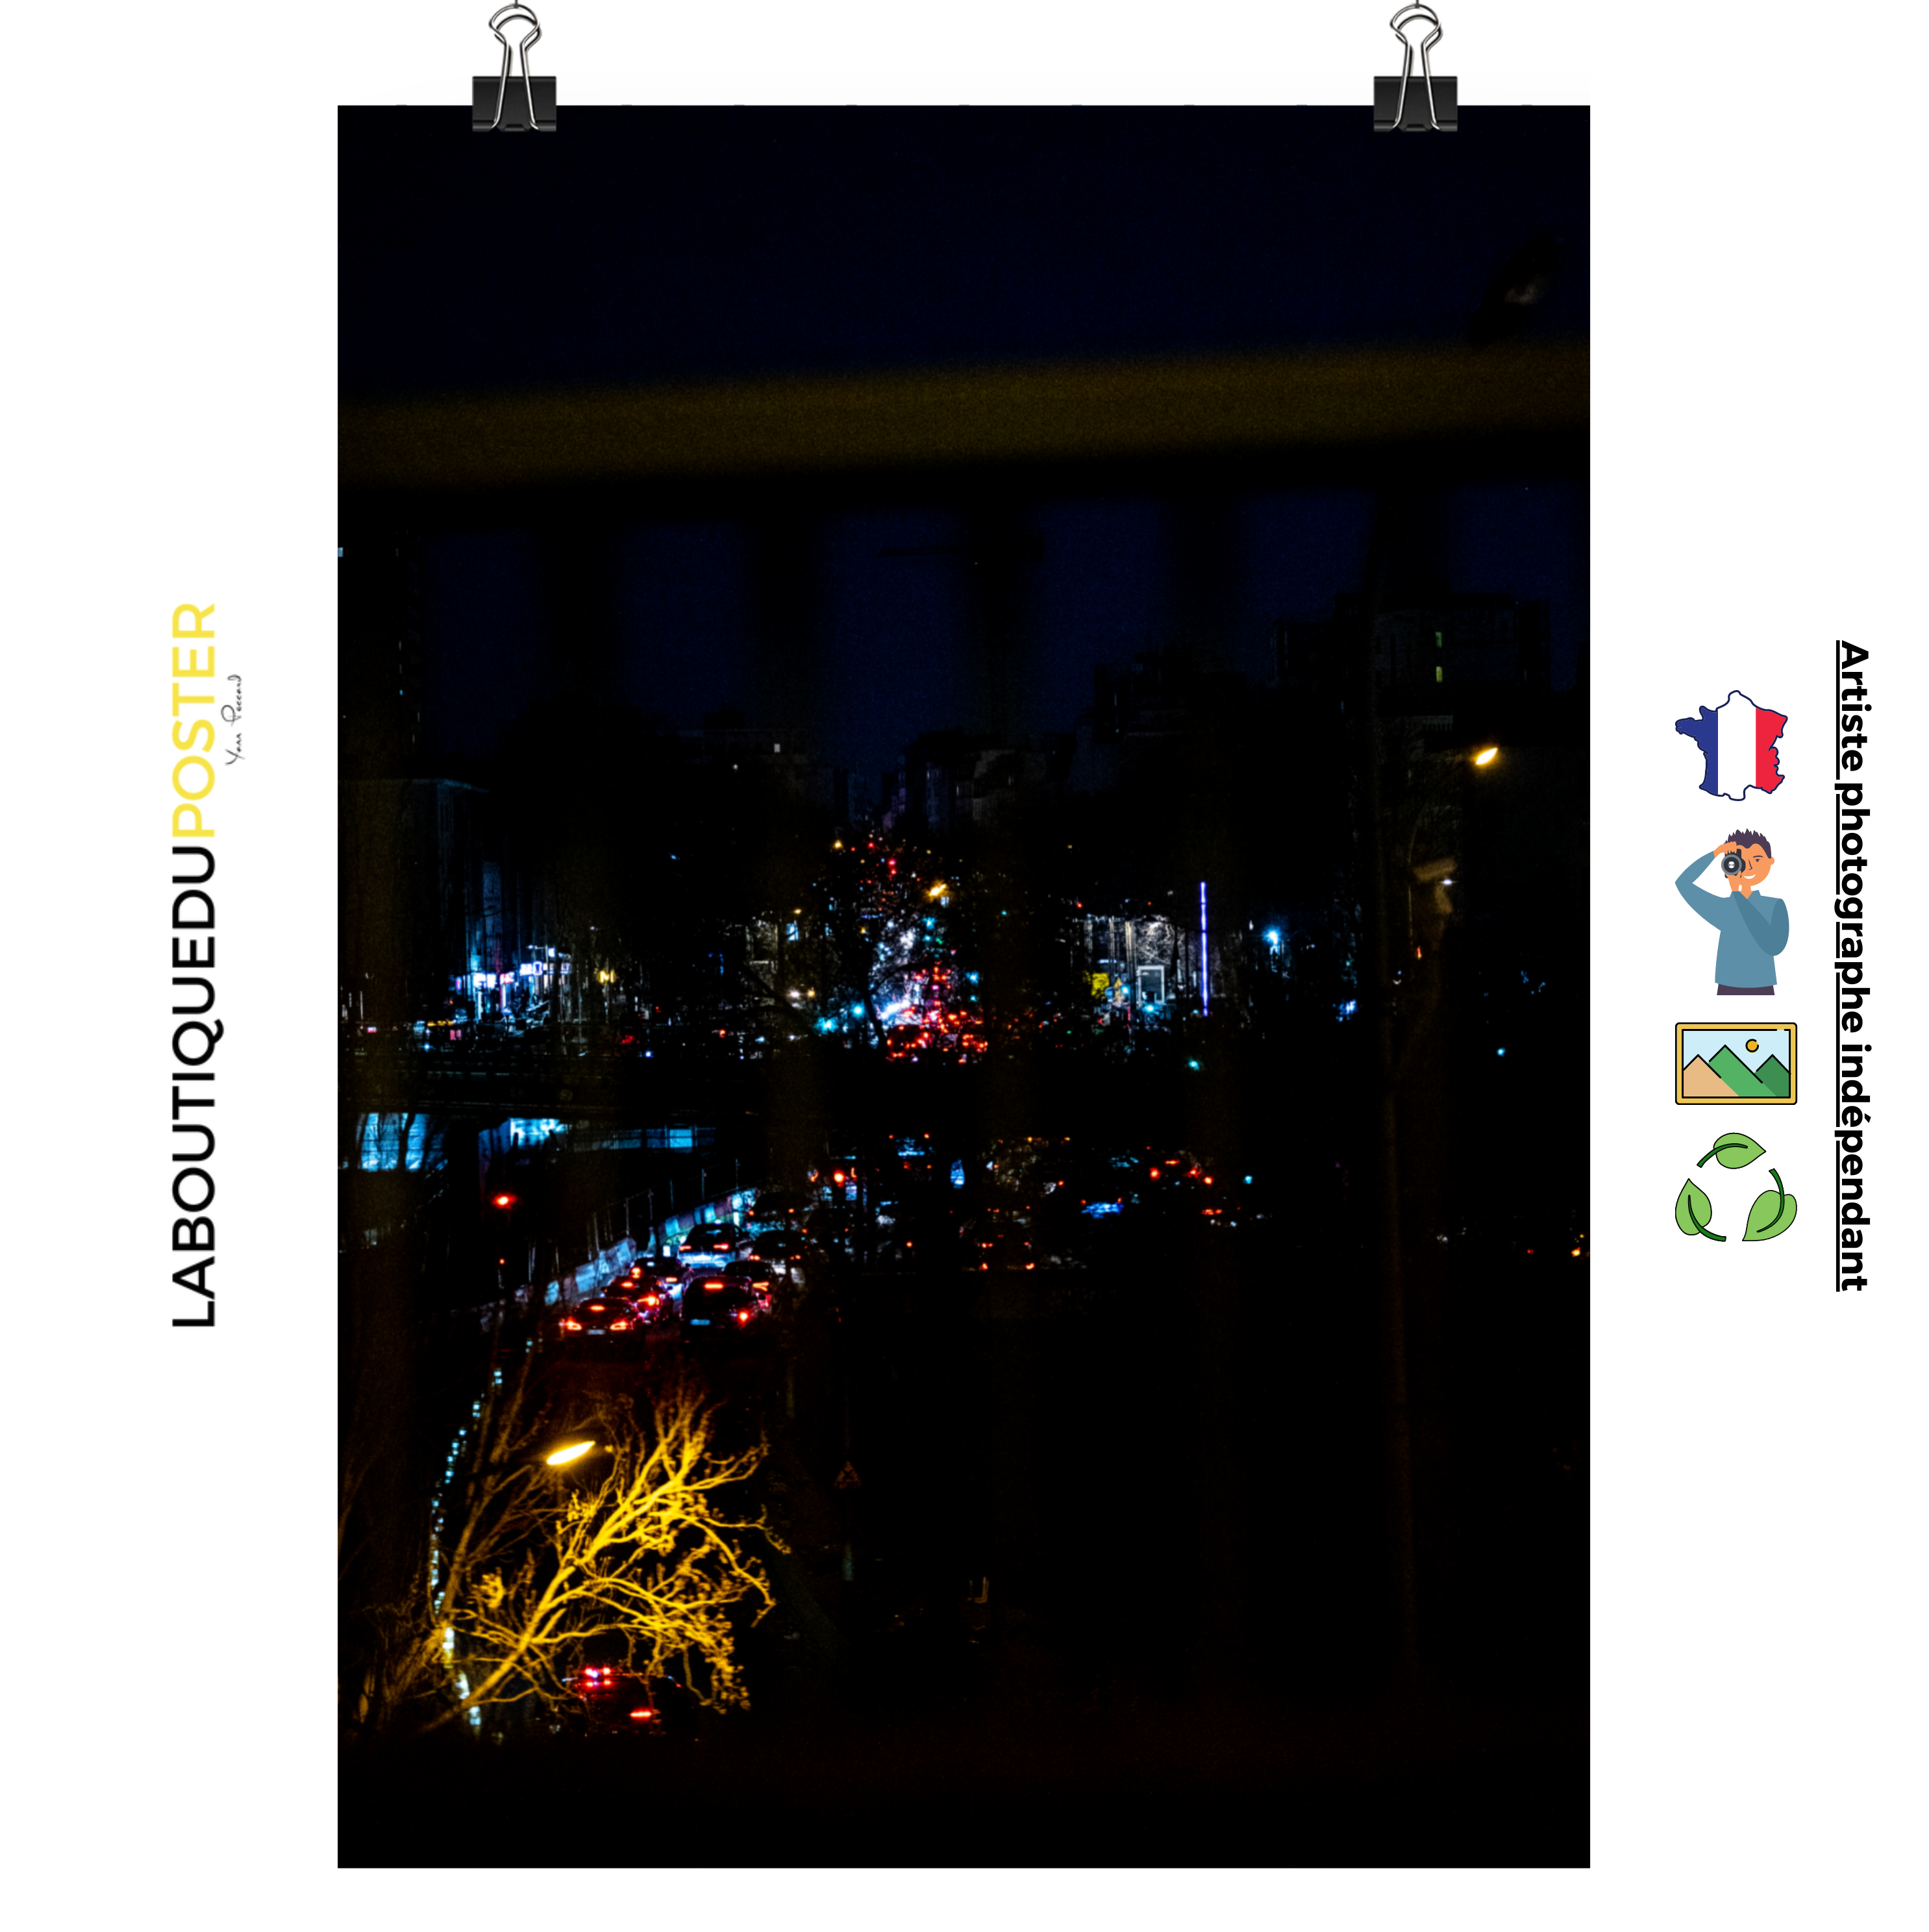 Poster mural - Embouteillage – Photographie de nuit – Poster photo, poster XXL, Photo d’art, photographie murale et des posters muraux des photographies de rue unique au monde. La boutique de posters créée par un Photographe français.